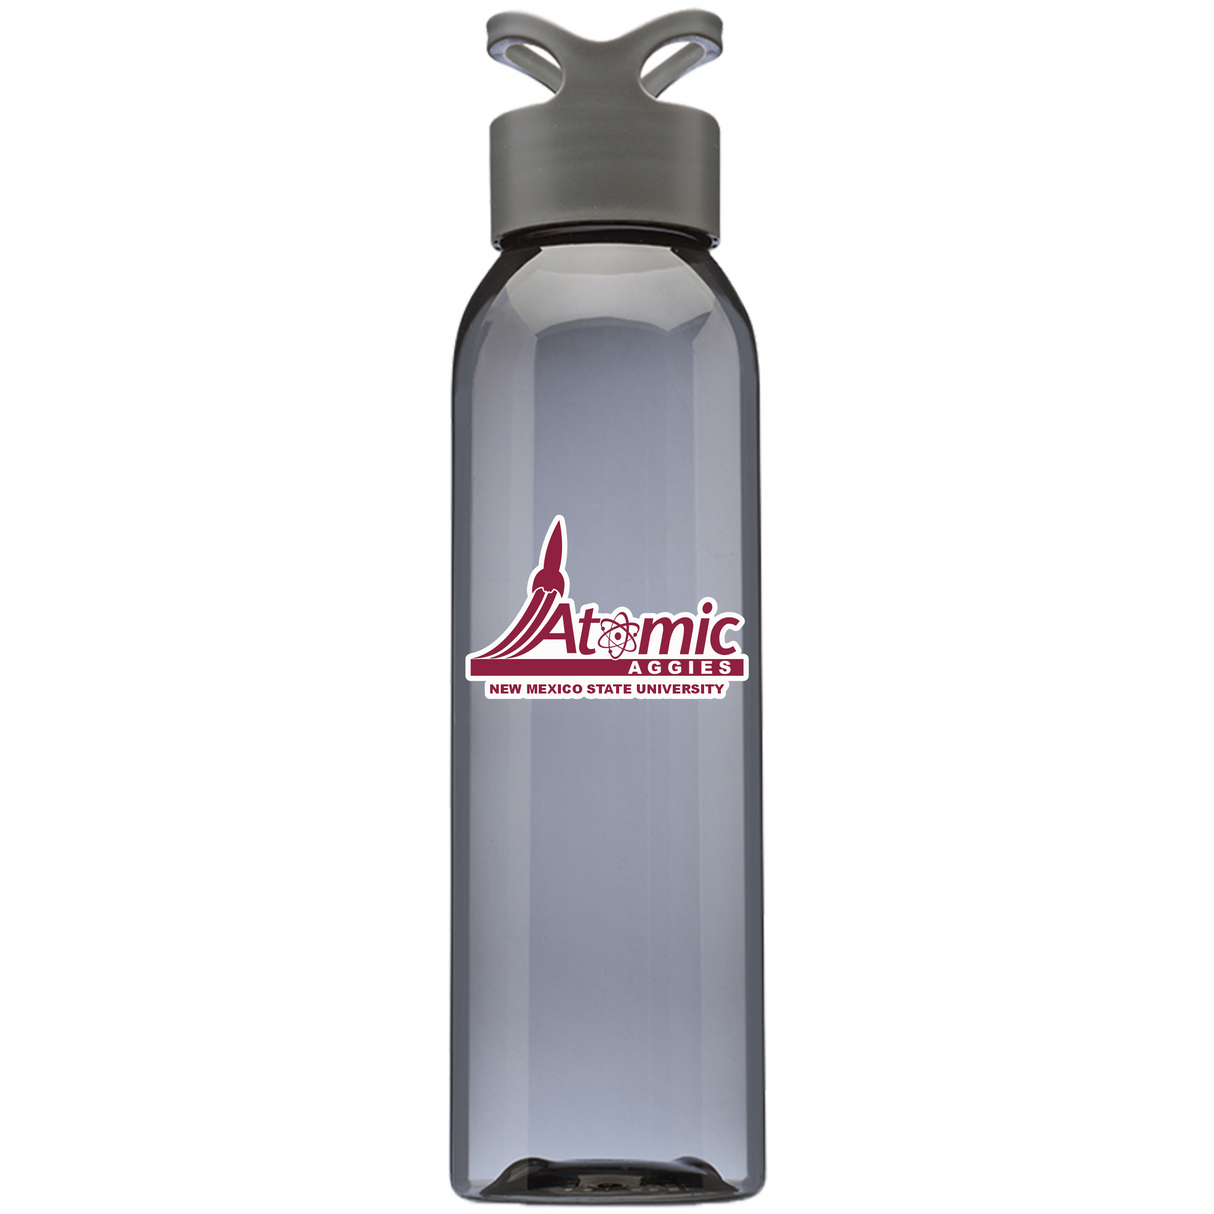 Atomic Aggies Water Bottle